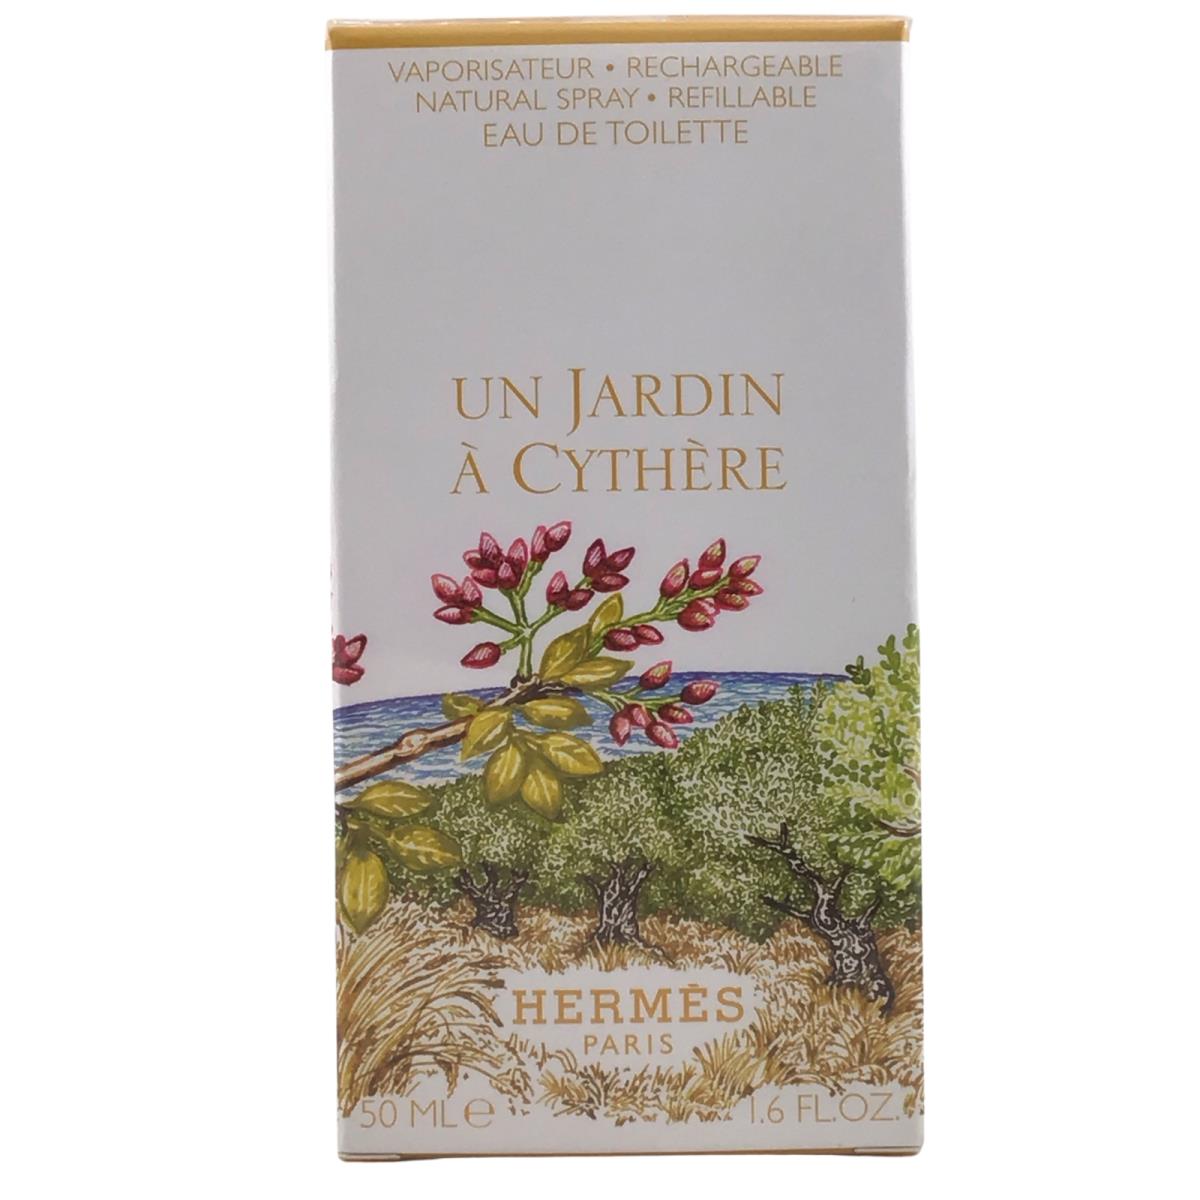 Hermes Un Jardin a Cythere Edt Eau de Toilette Parfum Perfume 50 ml/1.6oz